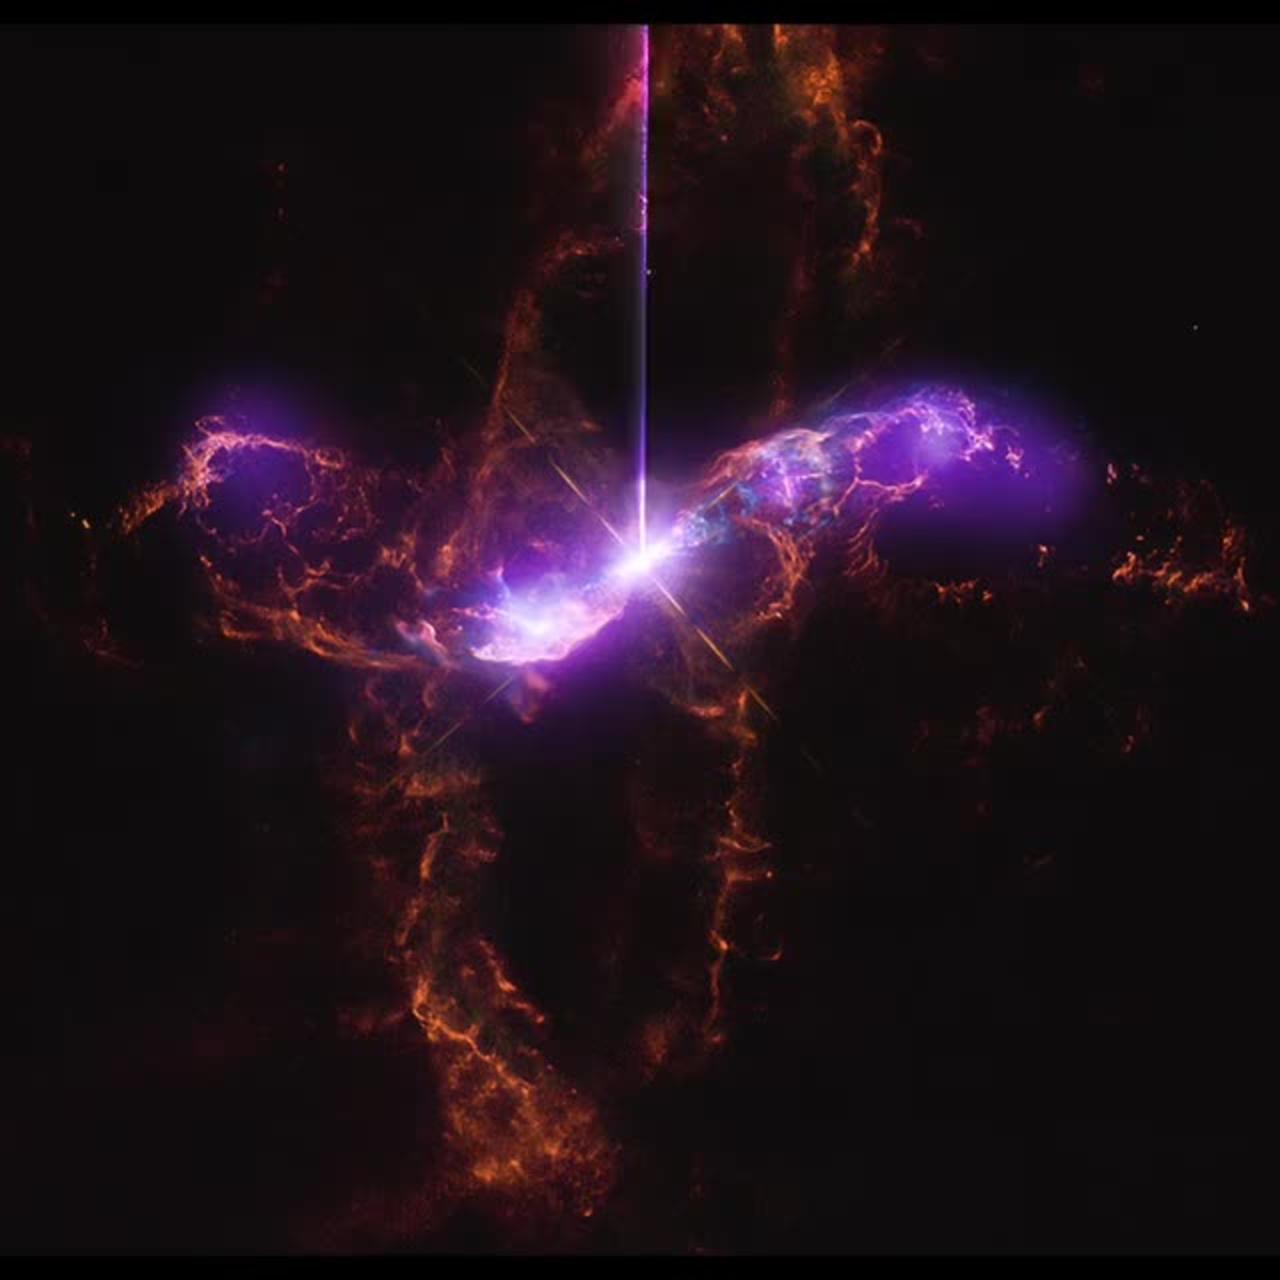 R Aquarii Sonification from Chandra X-Ray Observatory, NASA Telescopes